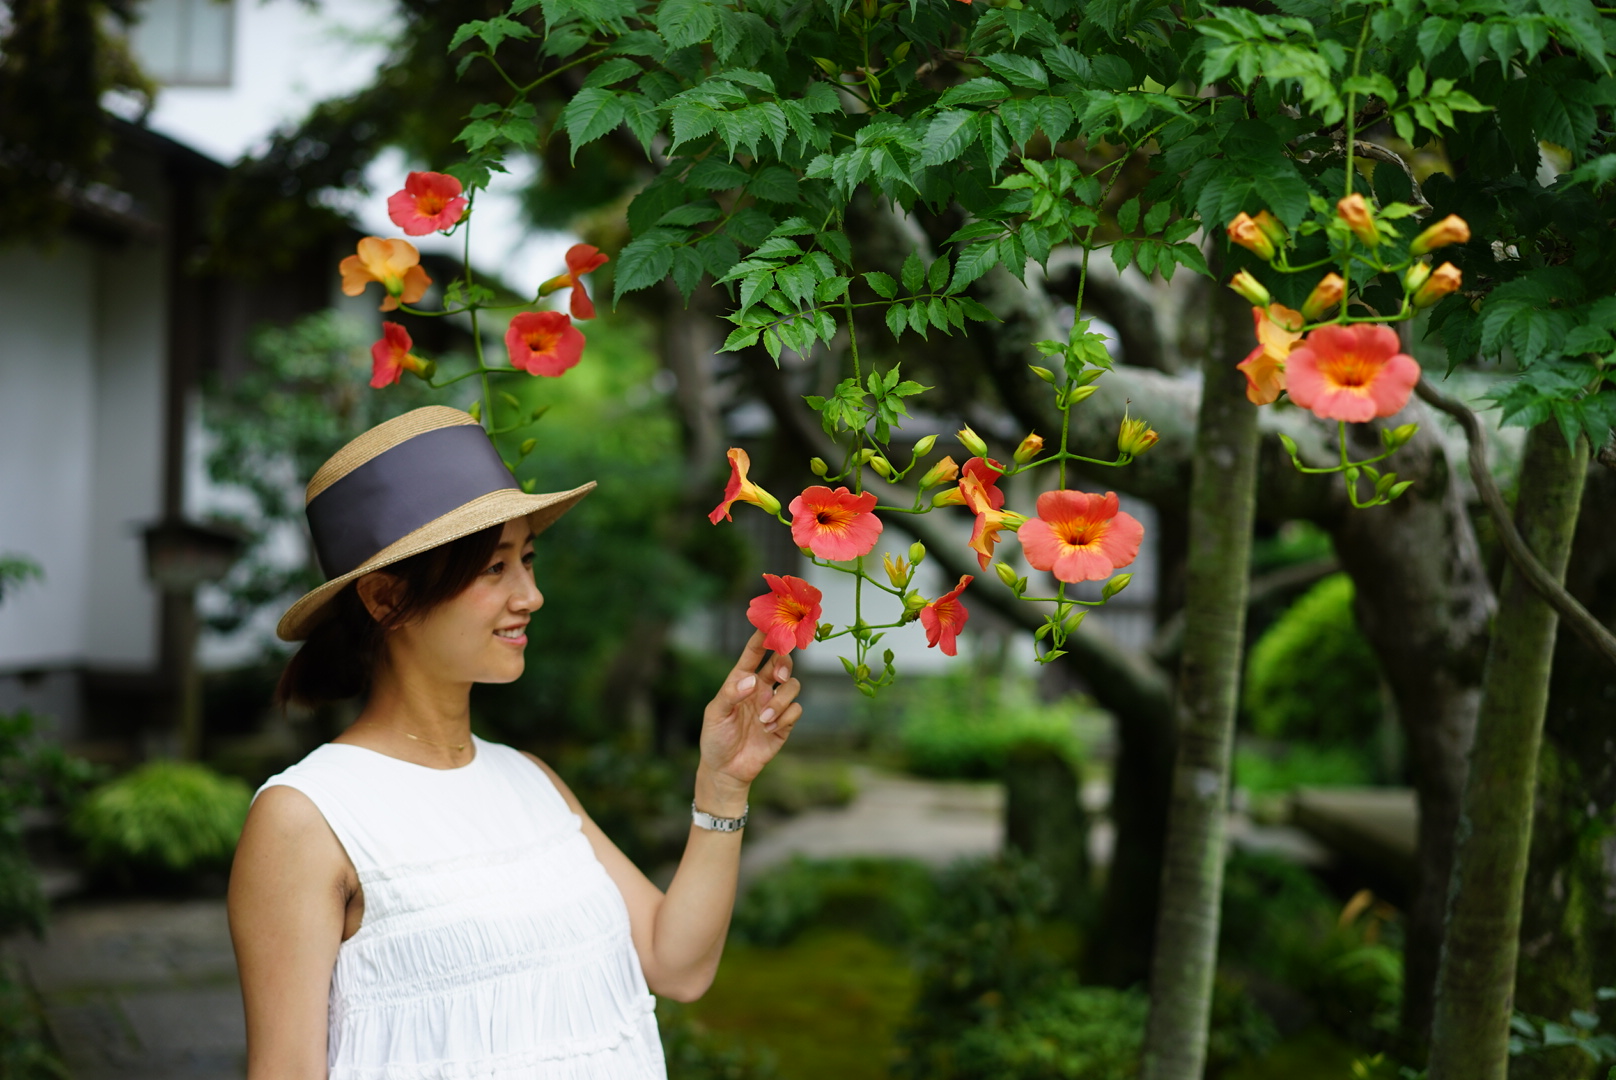 お花を楽しめる鎌倉〈海蔵寺〉の夏。子どもとの鎌倉散歩で出会った、色鮮やかな夏のお花たち。